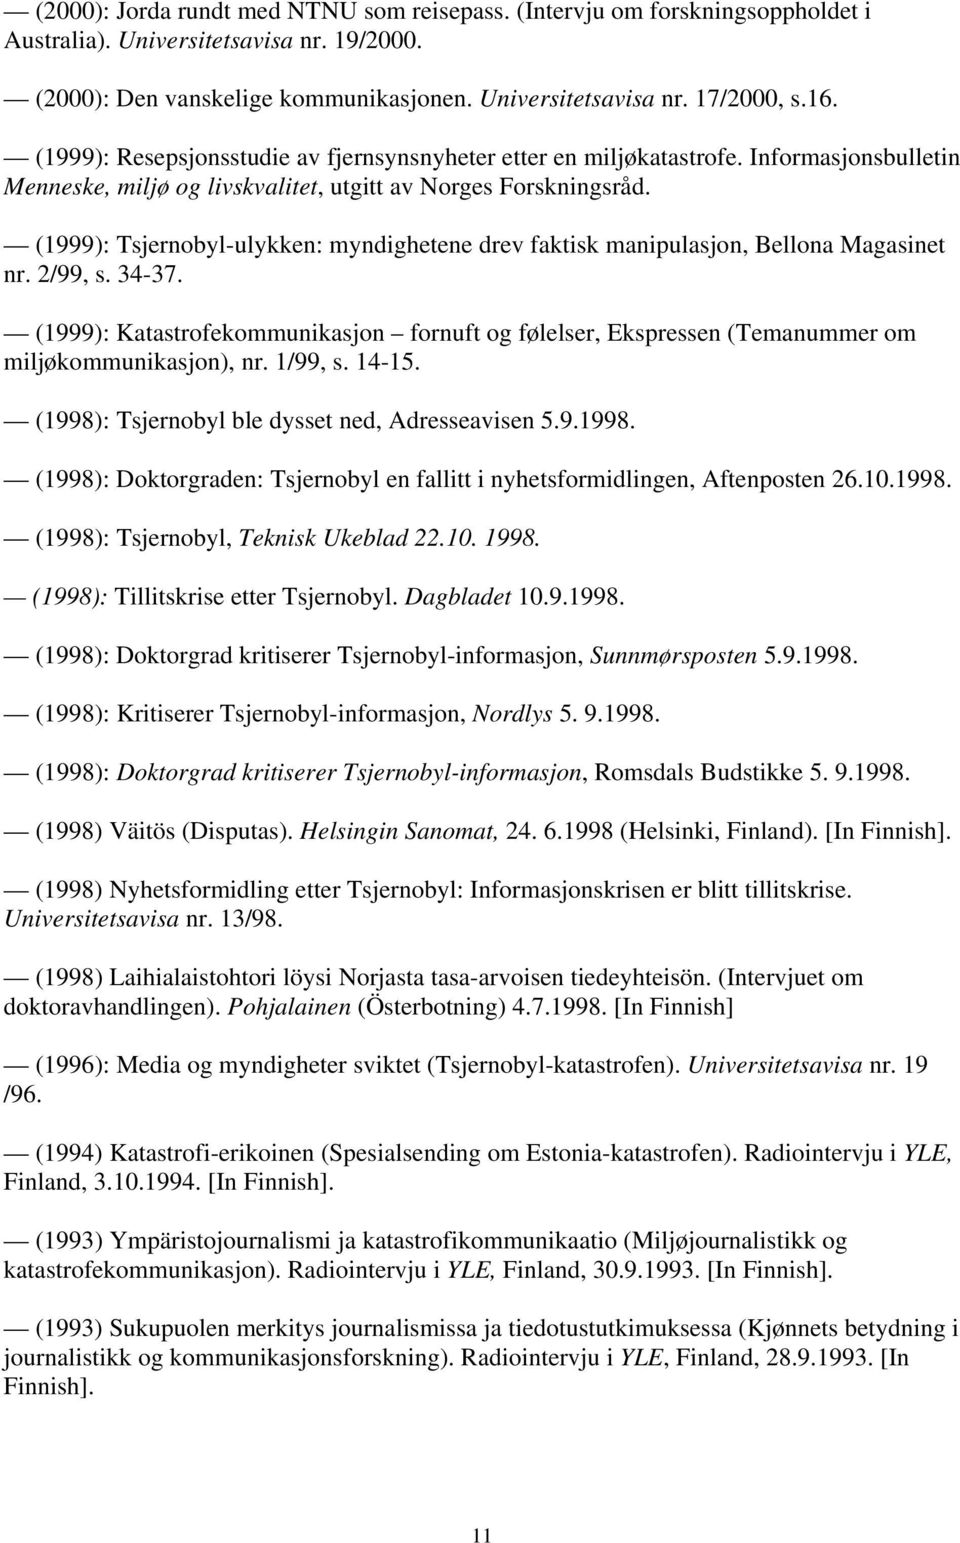 (1999): Tsjernobyl-ulykken: myndighetene drev faktisk manipulasjon, Bellona Magasinet nr. 2/99, s. 34-37.